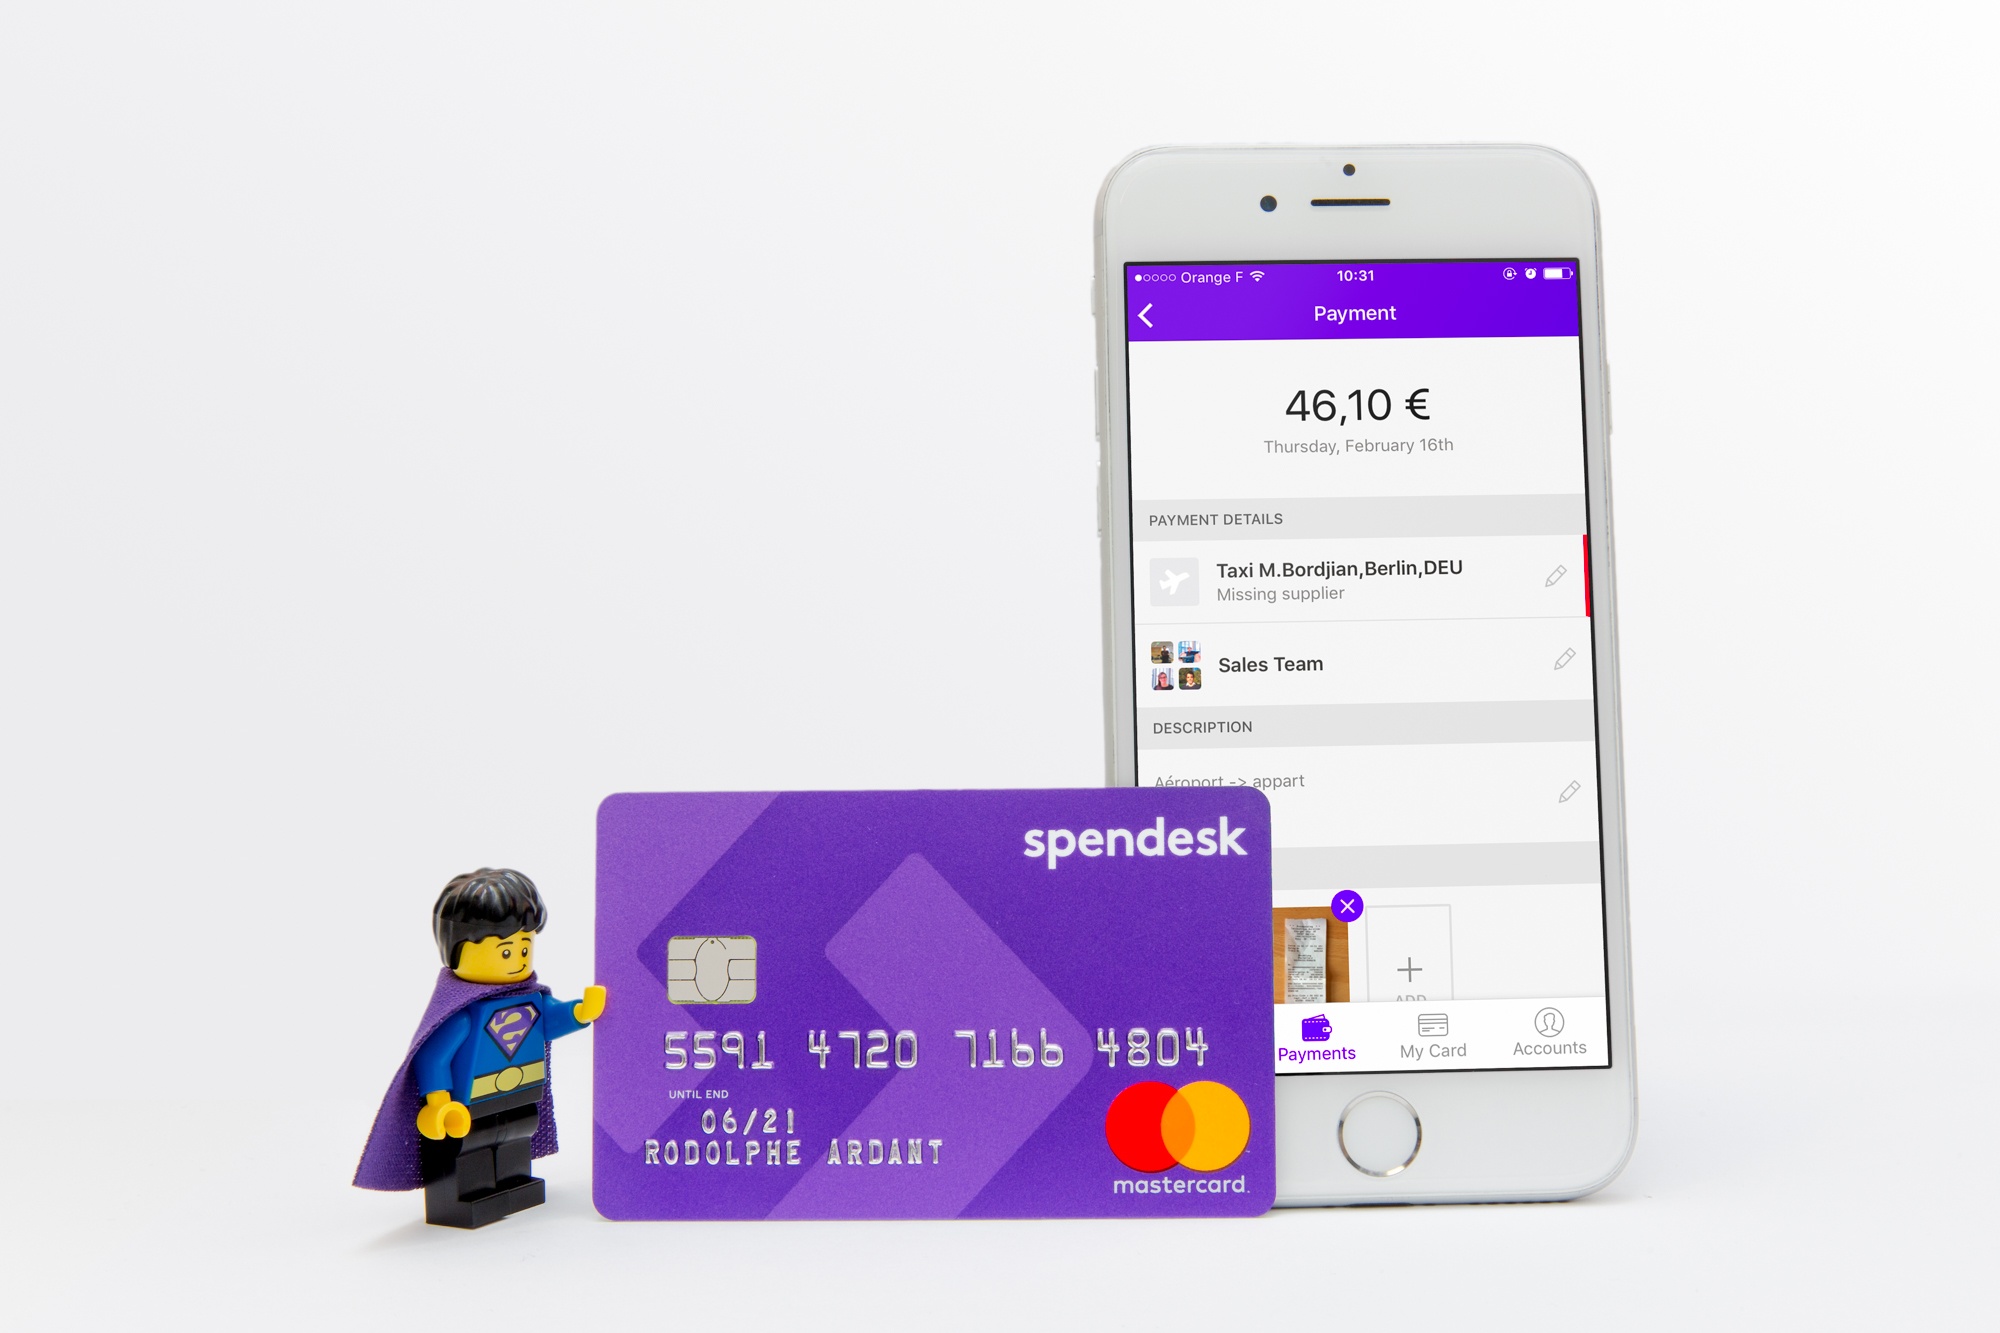 spendesk-mobile-card.jpg